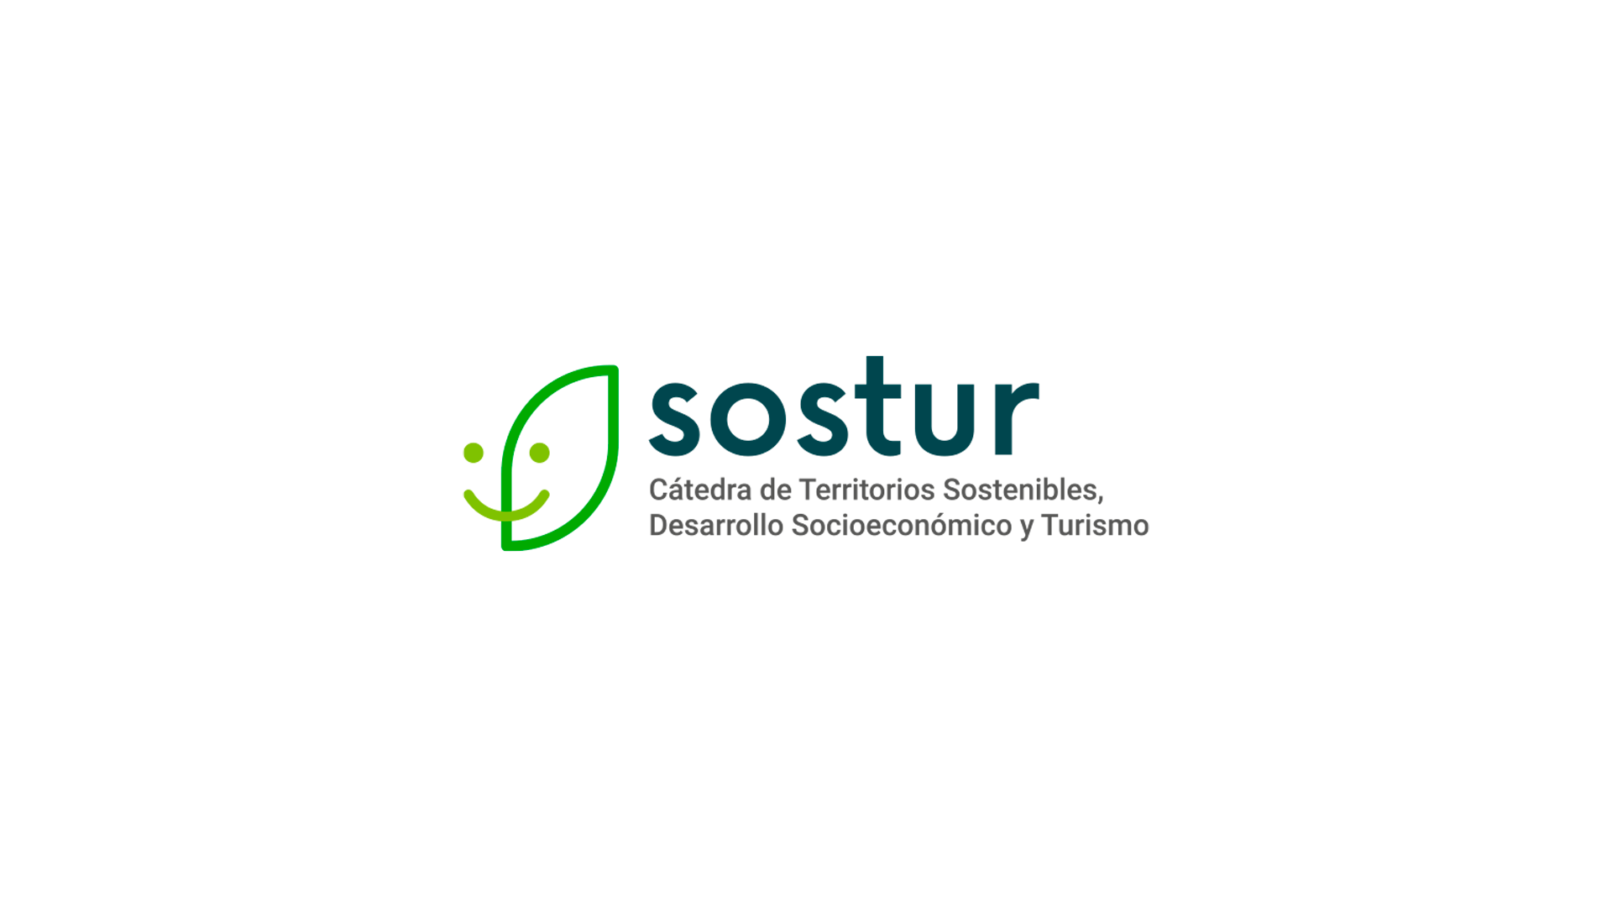 Logotipo SOSTUR Cátedra de Territorios Sostenibles, Desarrollo Socioeconómico y Turismo de la Universidad de La Laguna.